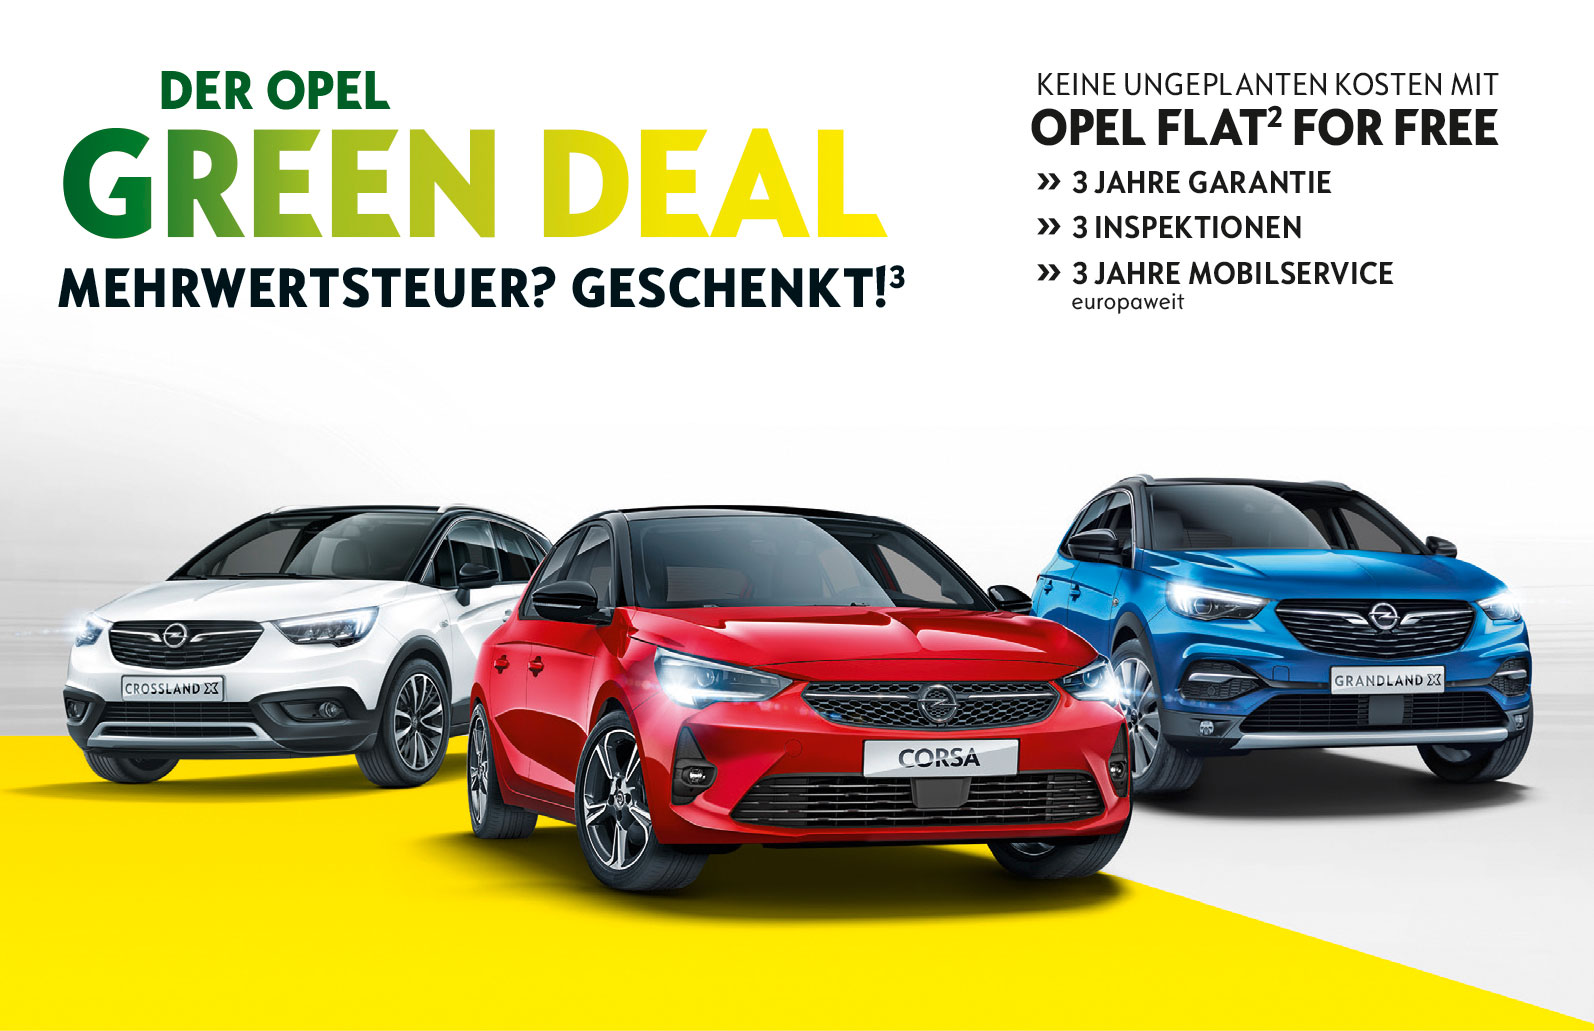 Der Opel Green Deal - Mehrwertsteuer? Geschenkt!*